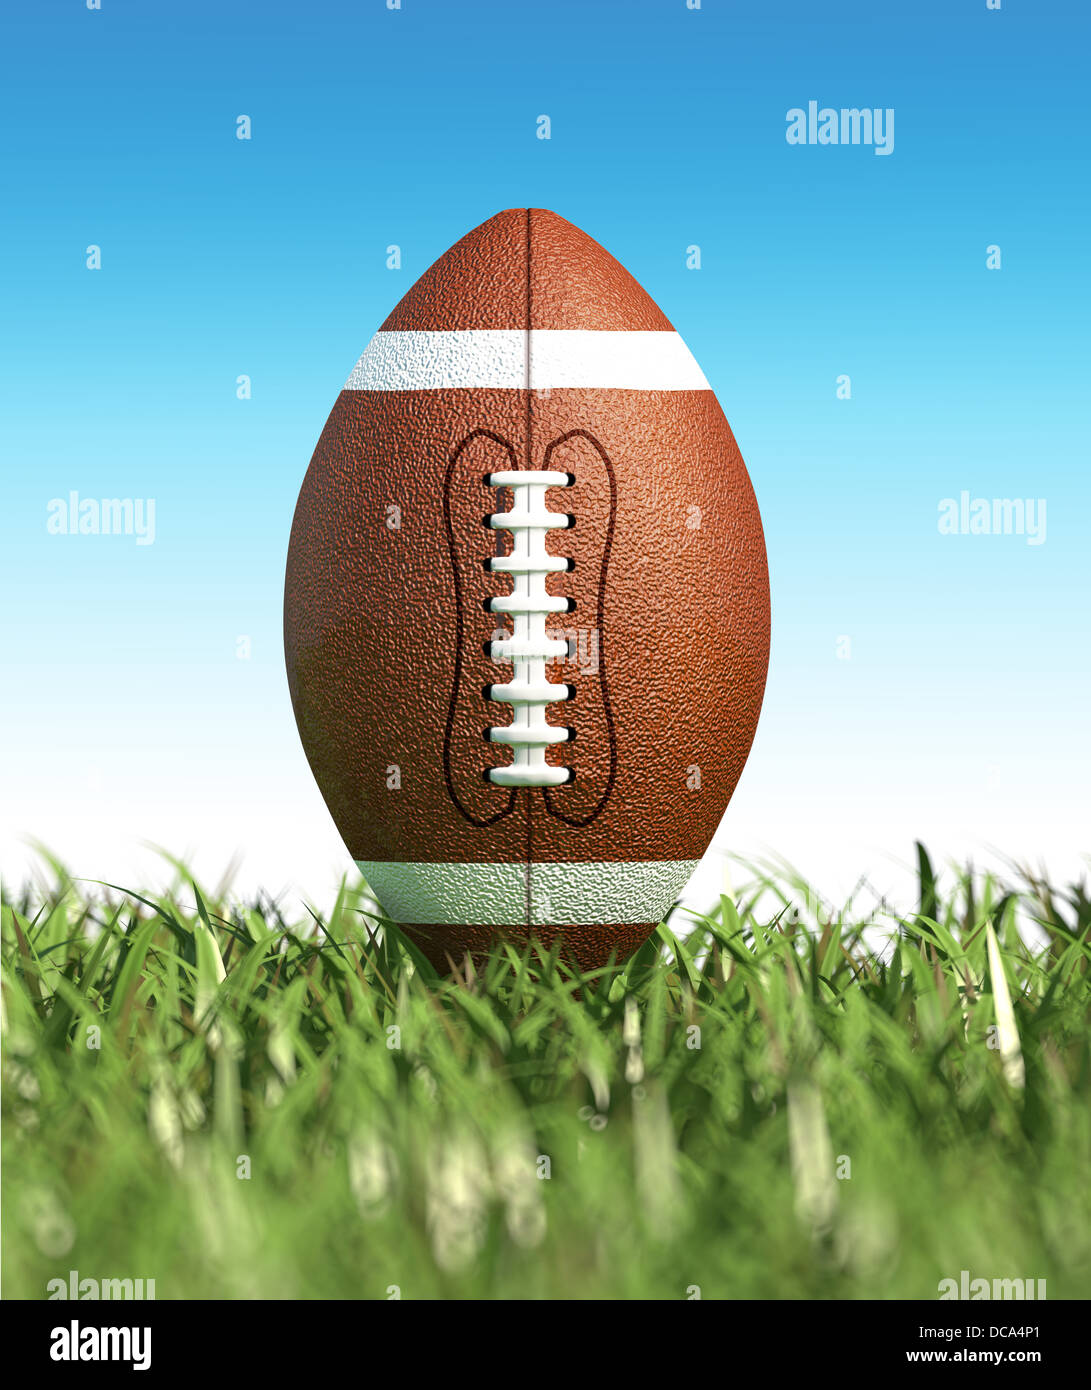 Amerikanischer Fußball auf dem Rasen, mit blauem Himmel im Hintergrund, keine Wolken. Seitenansicht vom Boden. Stockfoto